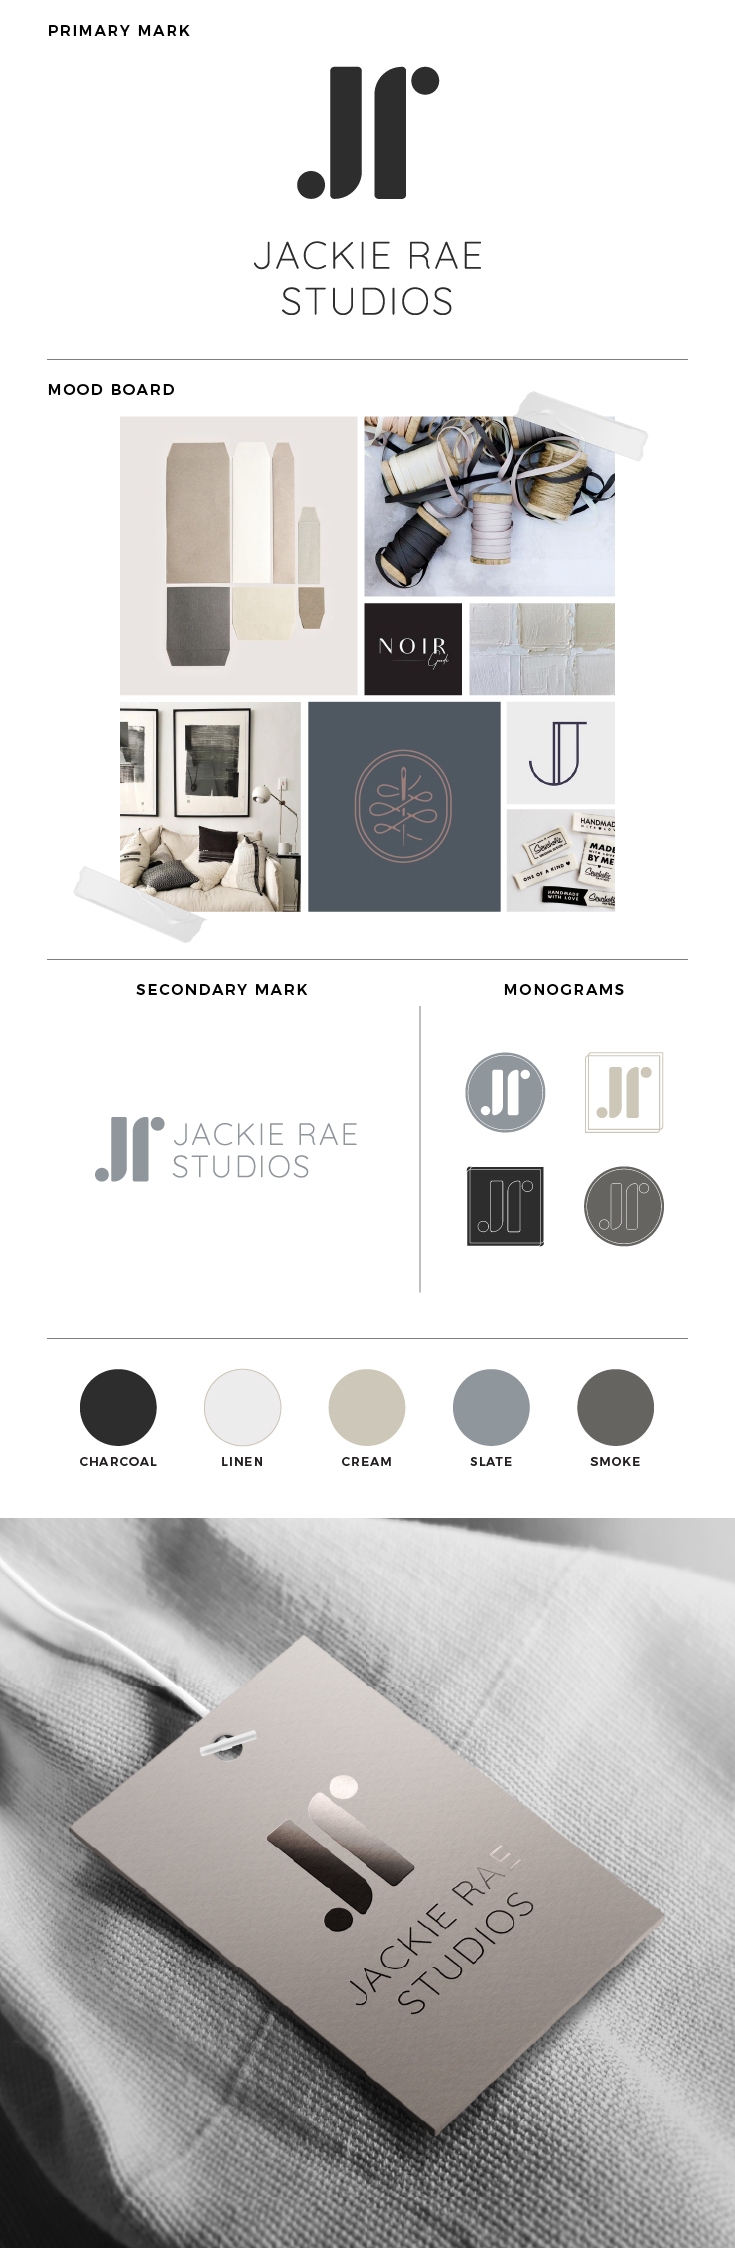 Jackie Rae Studios | Pinterest Board